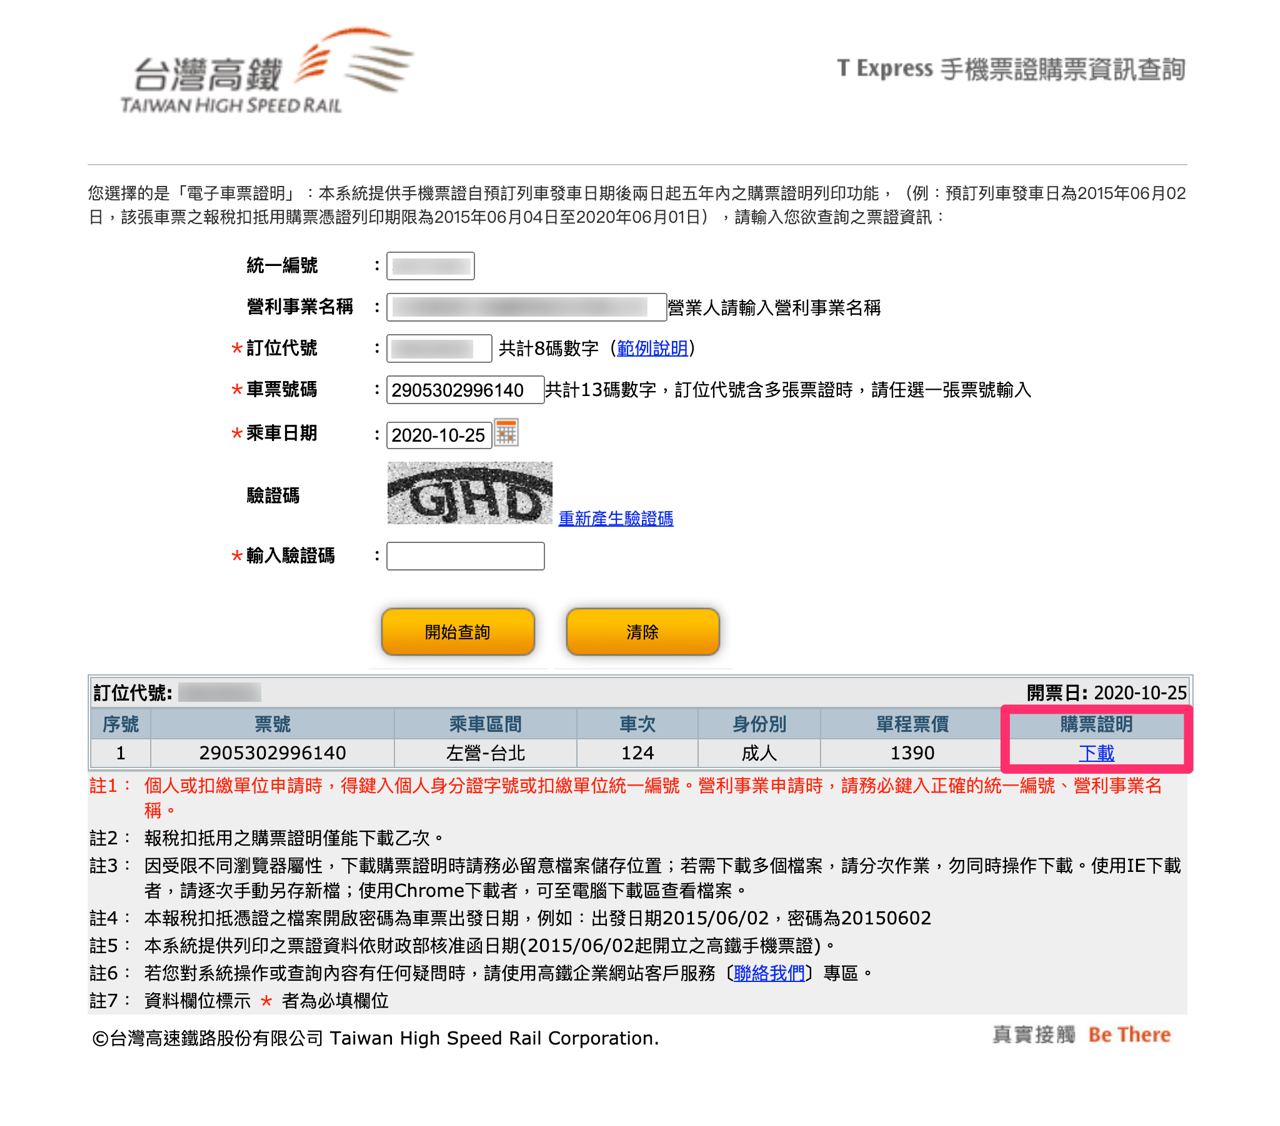 高鐵 T Express 手機 App 電子車票購票證明列印